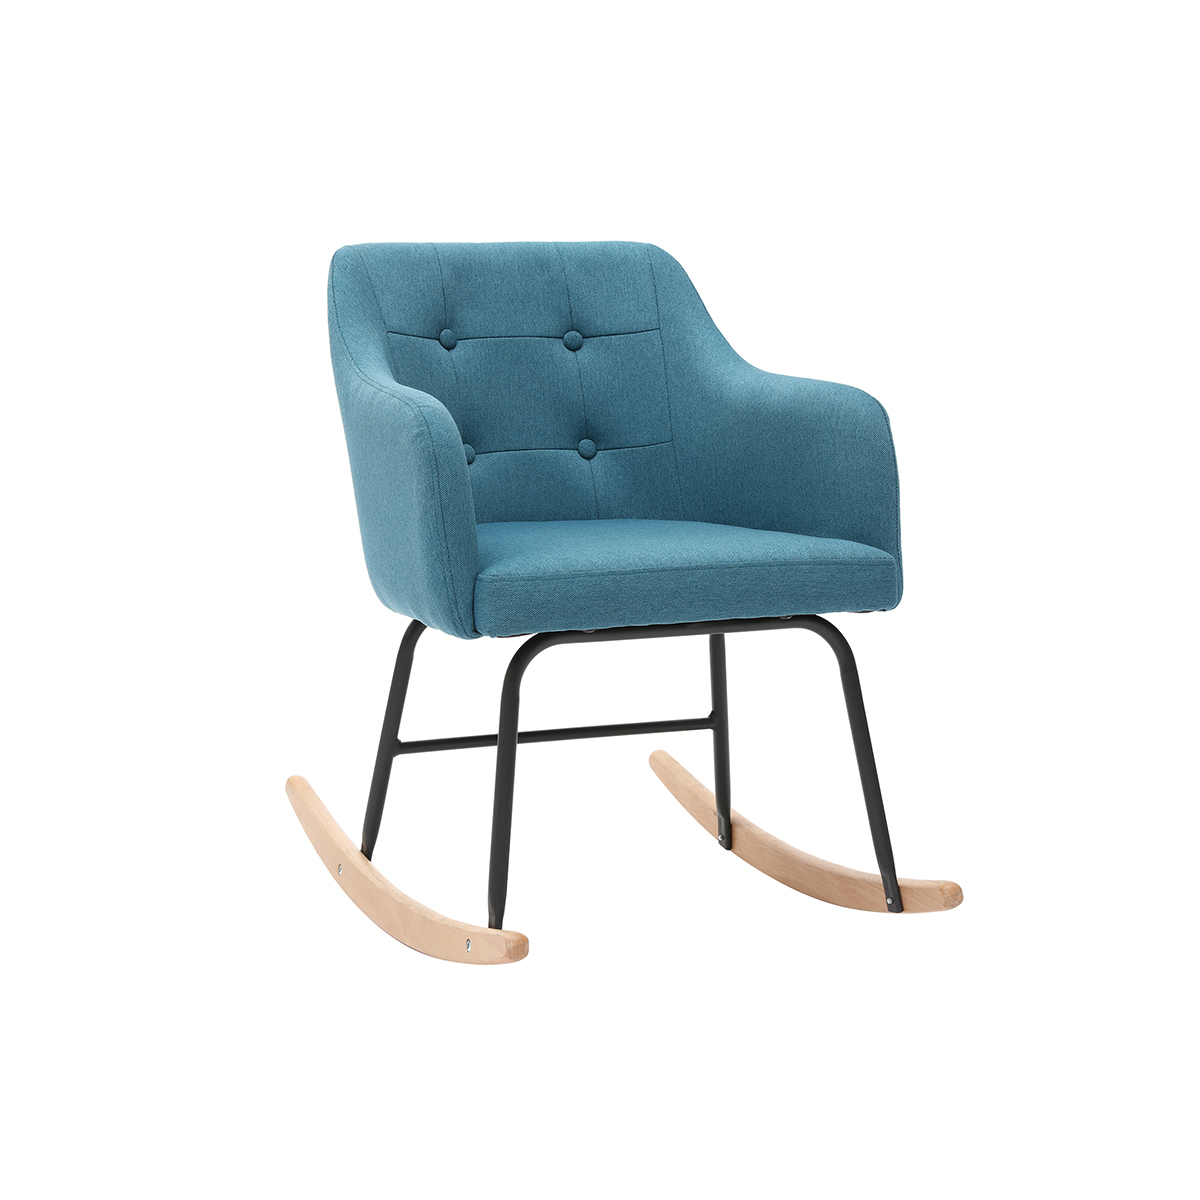 Rocking chair scandinave en tissu bleu canard, métal noir et bois clair BALTIK - Miliboo & Stéphane Plaza vue1